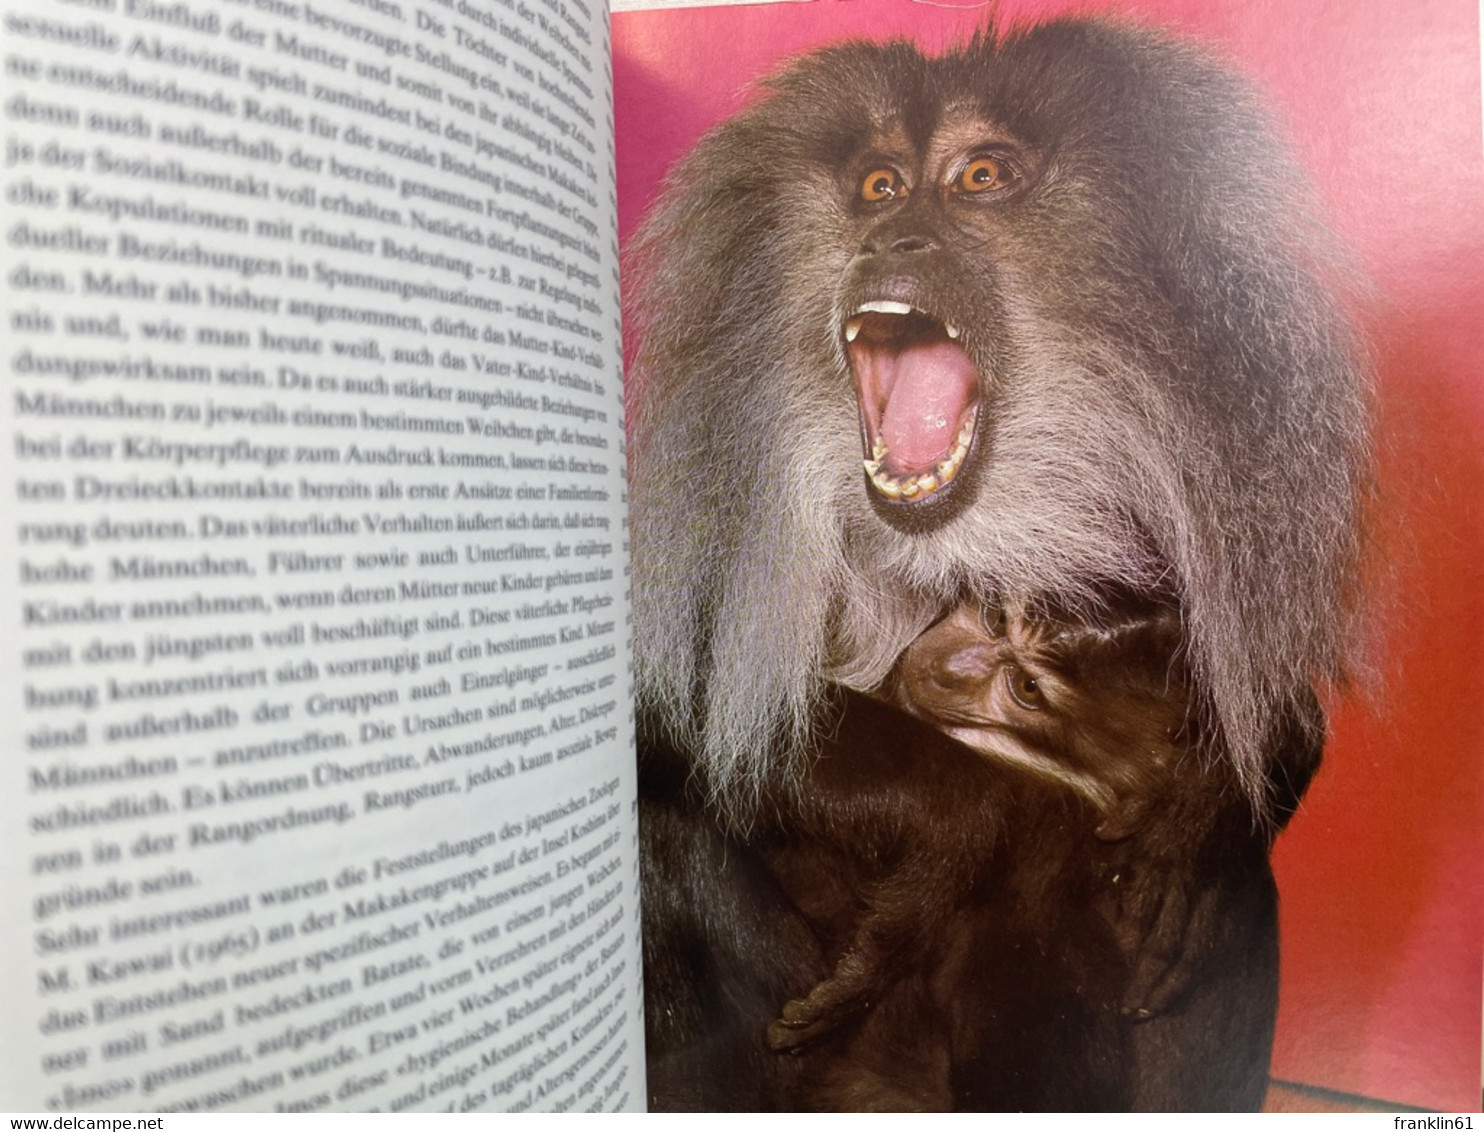 Das Grosse Affenbuch. - Animals